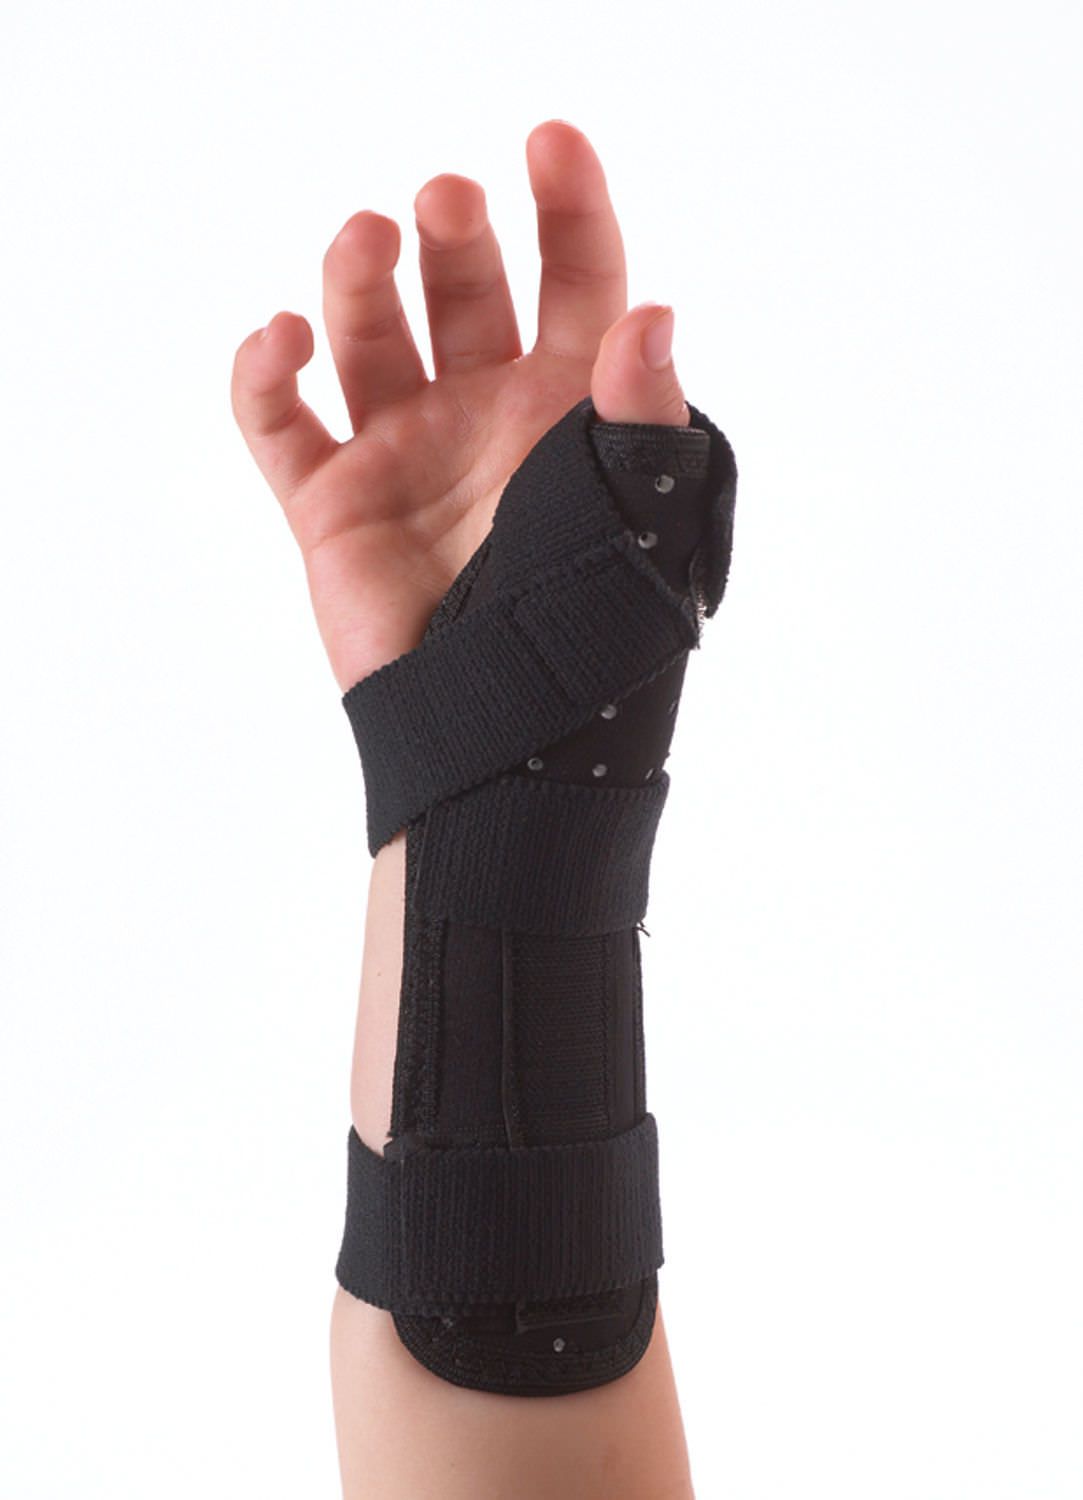 Wrist splint (orthopedic immobilization) / thumb splint / immobilisation / pediatric 73-5011 Corflex